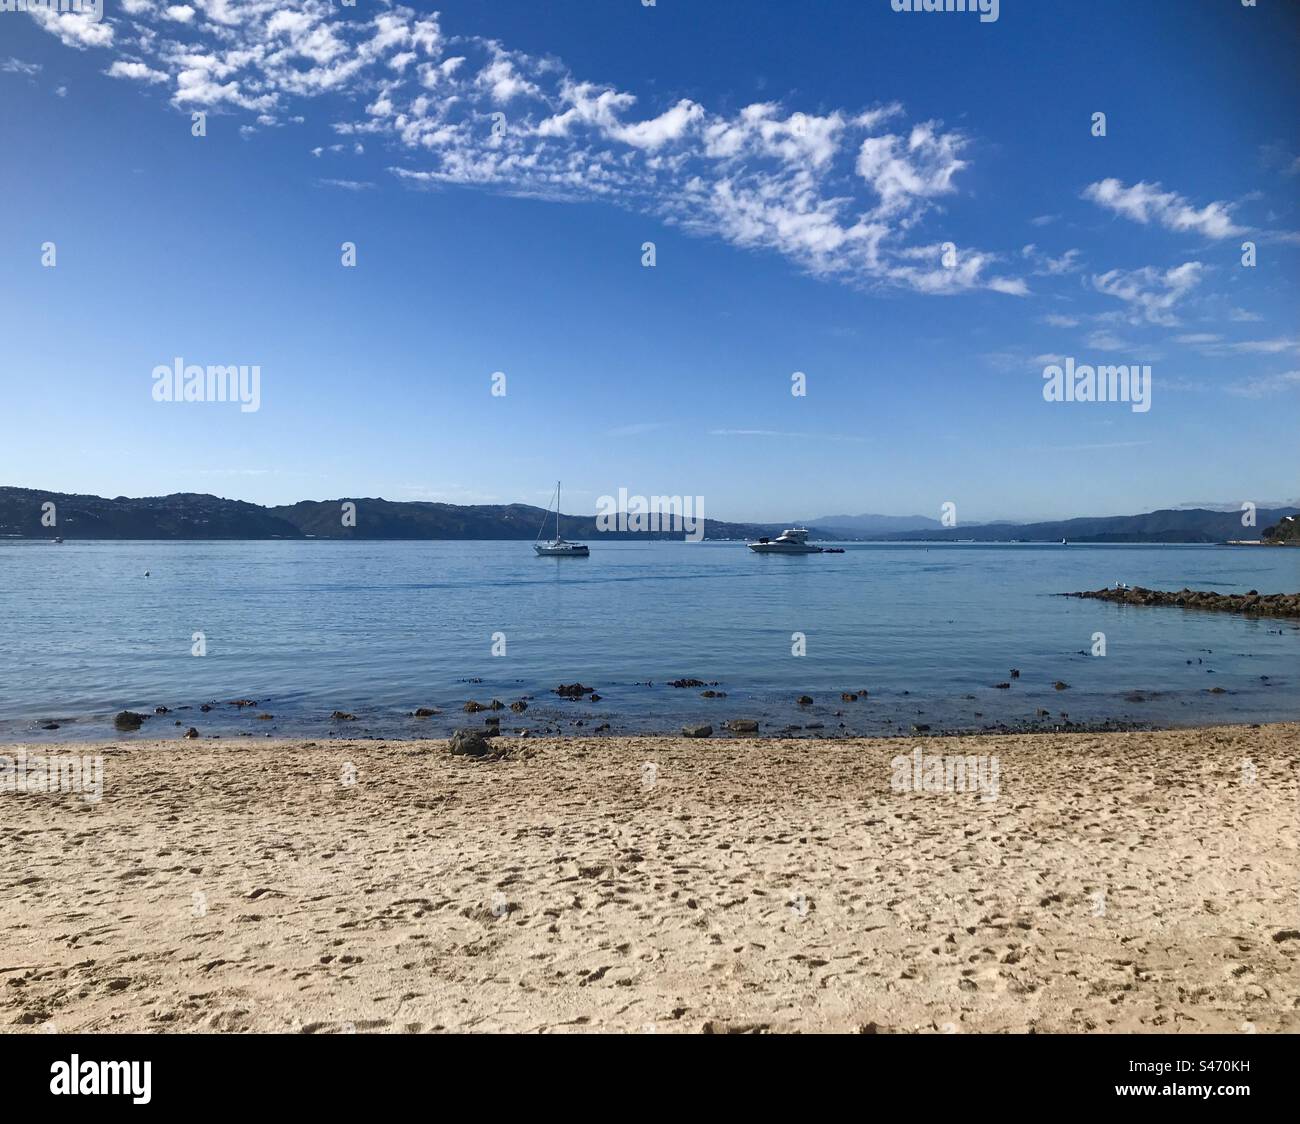 Beach Days - Sun, Sand, Blue Sky’s, Boats Stock Photo